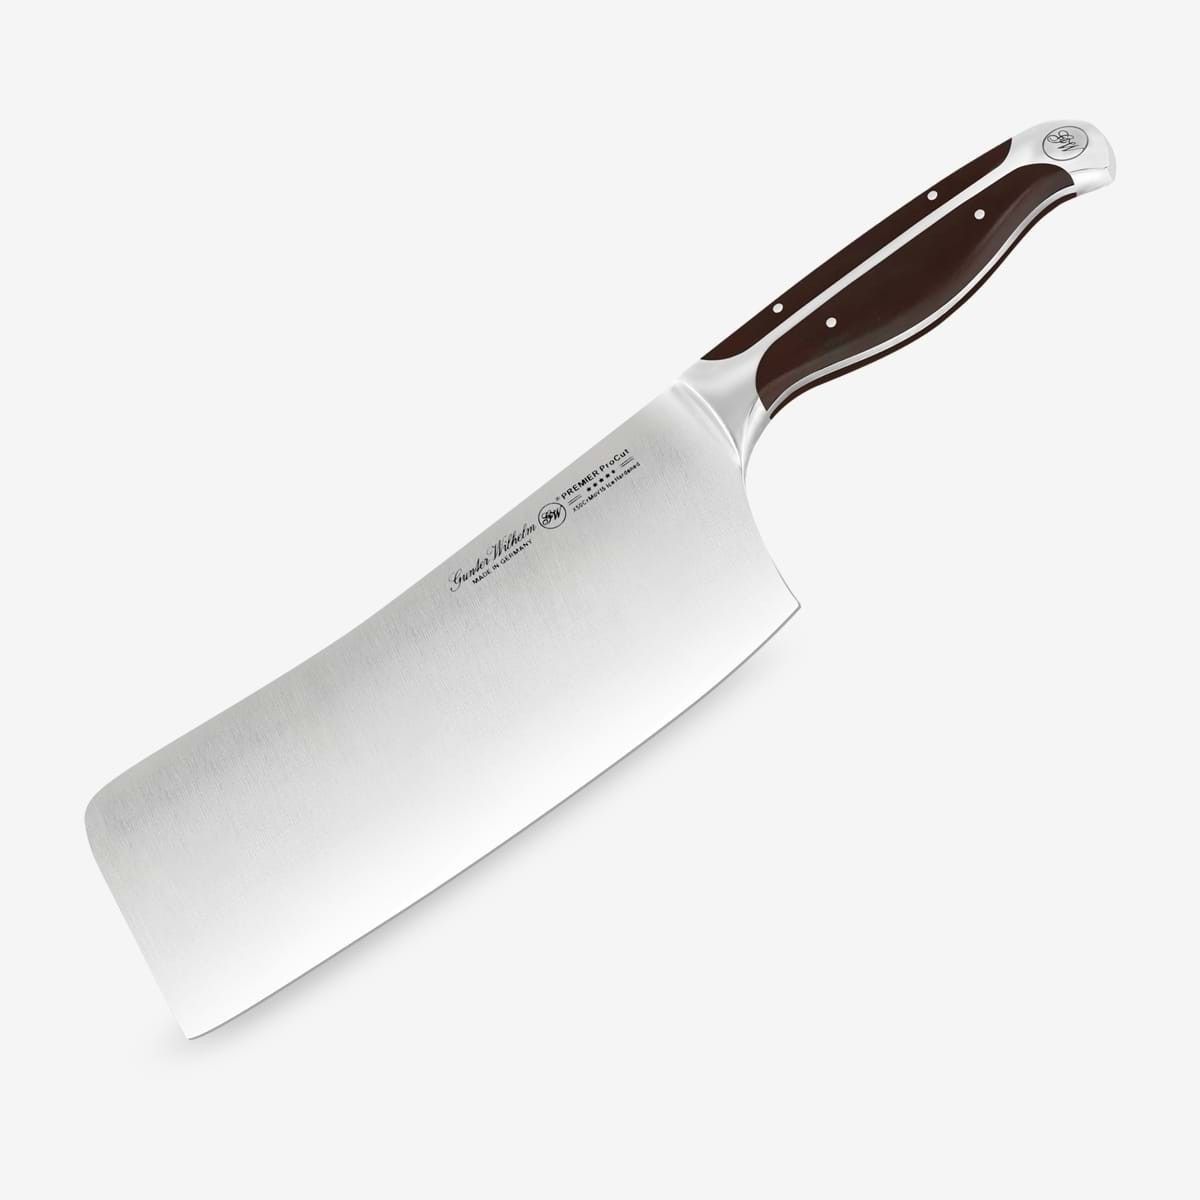 Gunter Wilhelm Thunder Meat Cleaver Knife, 8 Inch | Dark Brown ABS Handle SKU: 30-319-0980